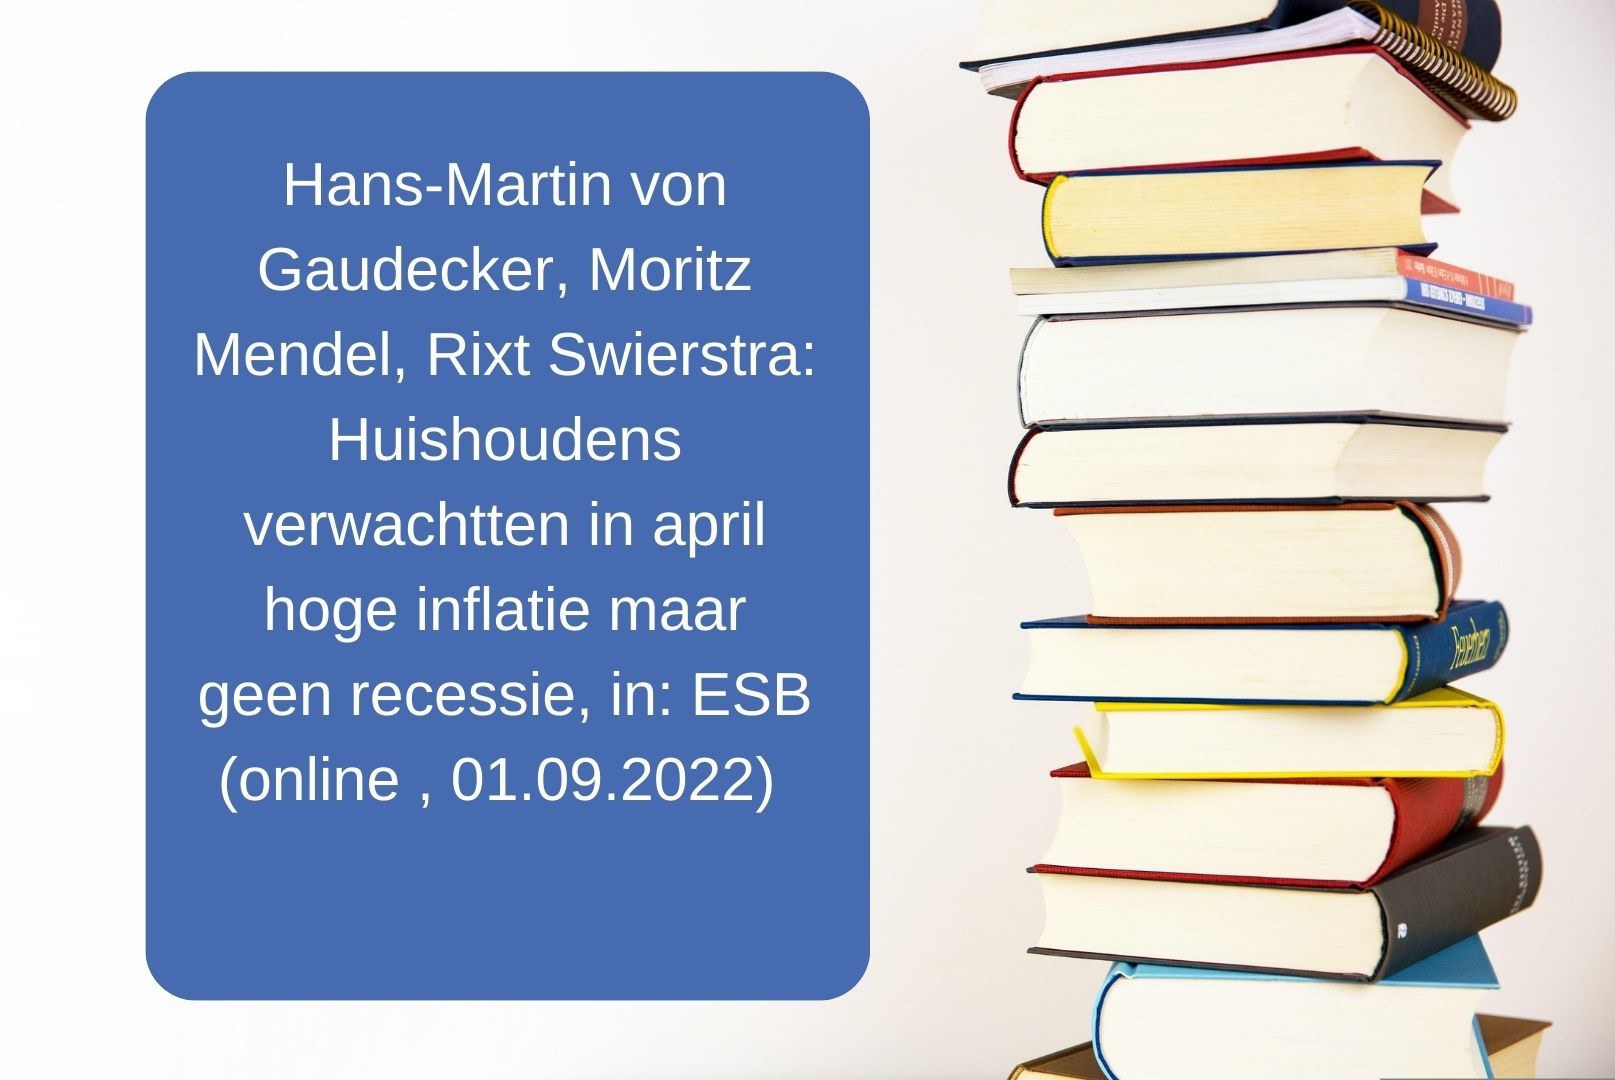 Hans-Martin von Gaudecker, Moritz Mendel, Rixt Swierstra. Huishoudens verwachtten in april hoge inflatie maar geen recessie.jpg